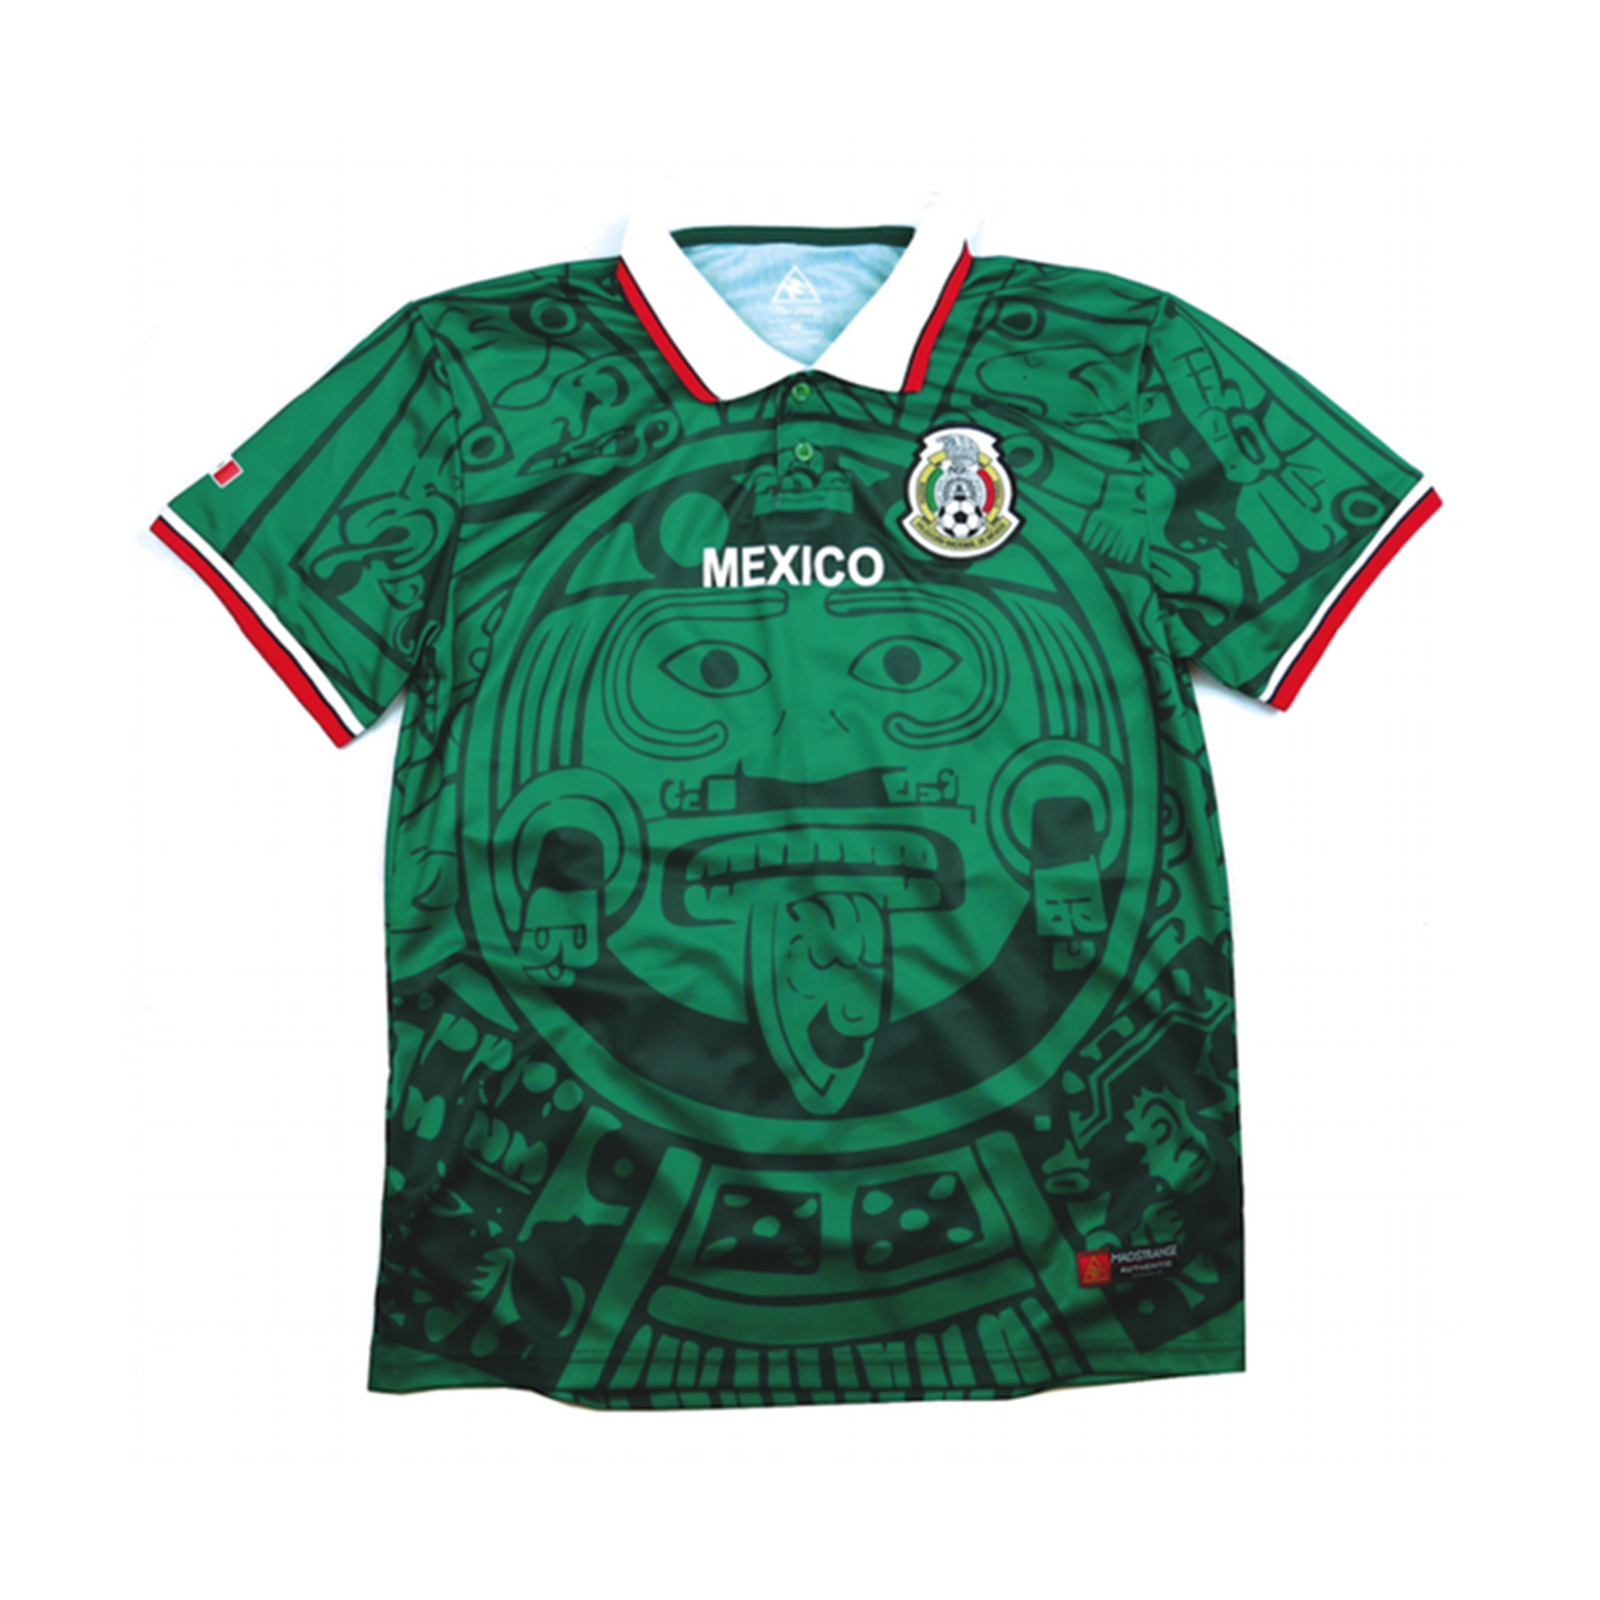 Gespecificeerd onduidelijk reinigen Mexico 1998 Green Jersey By MadStrange